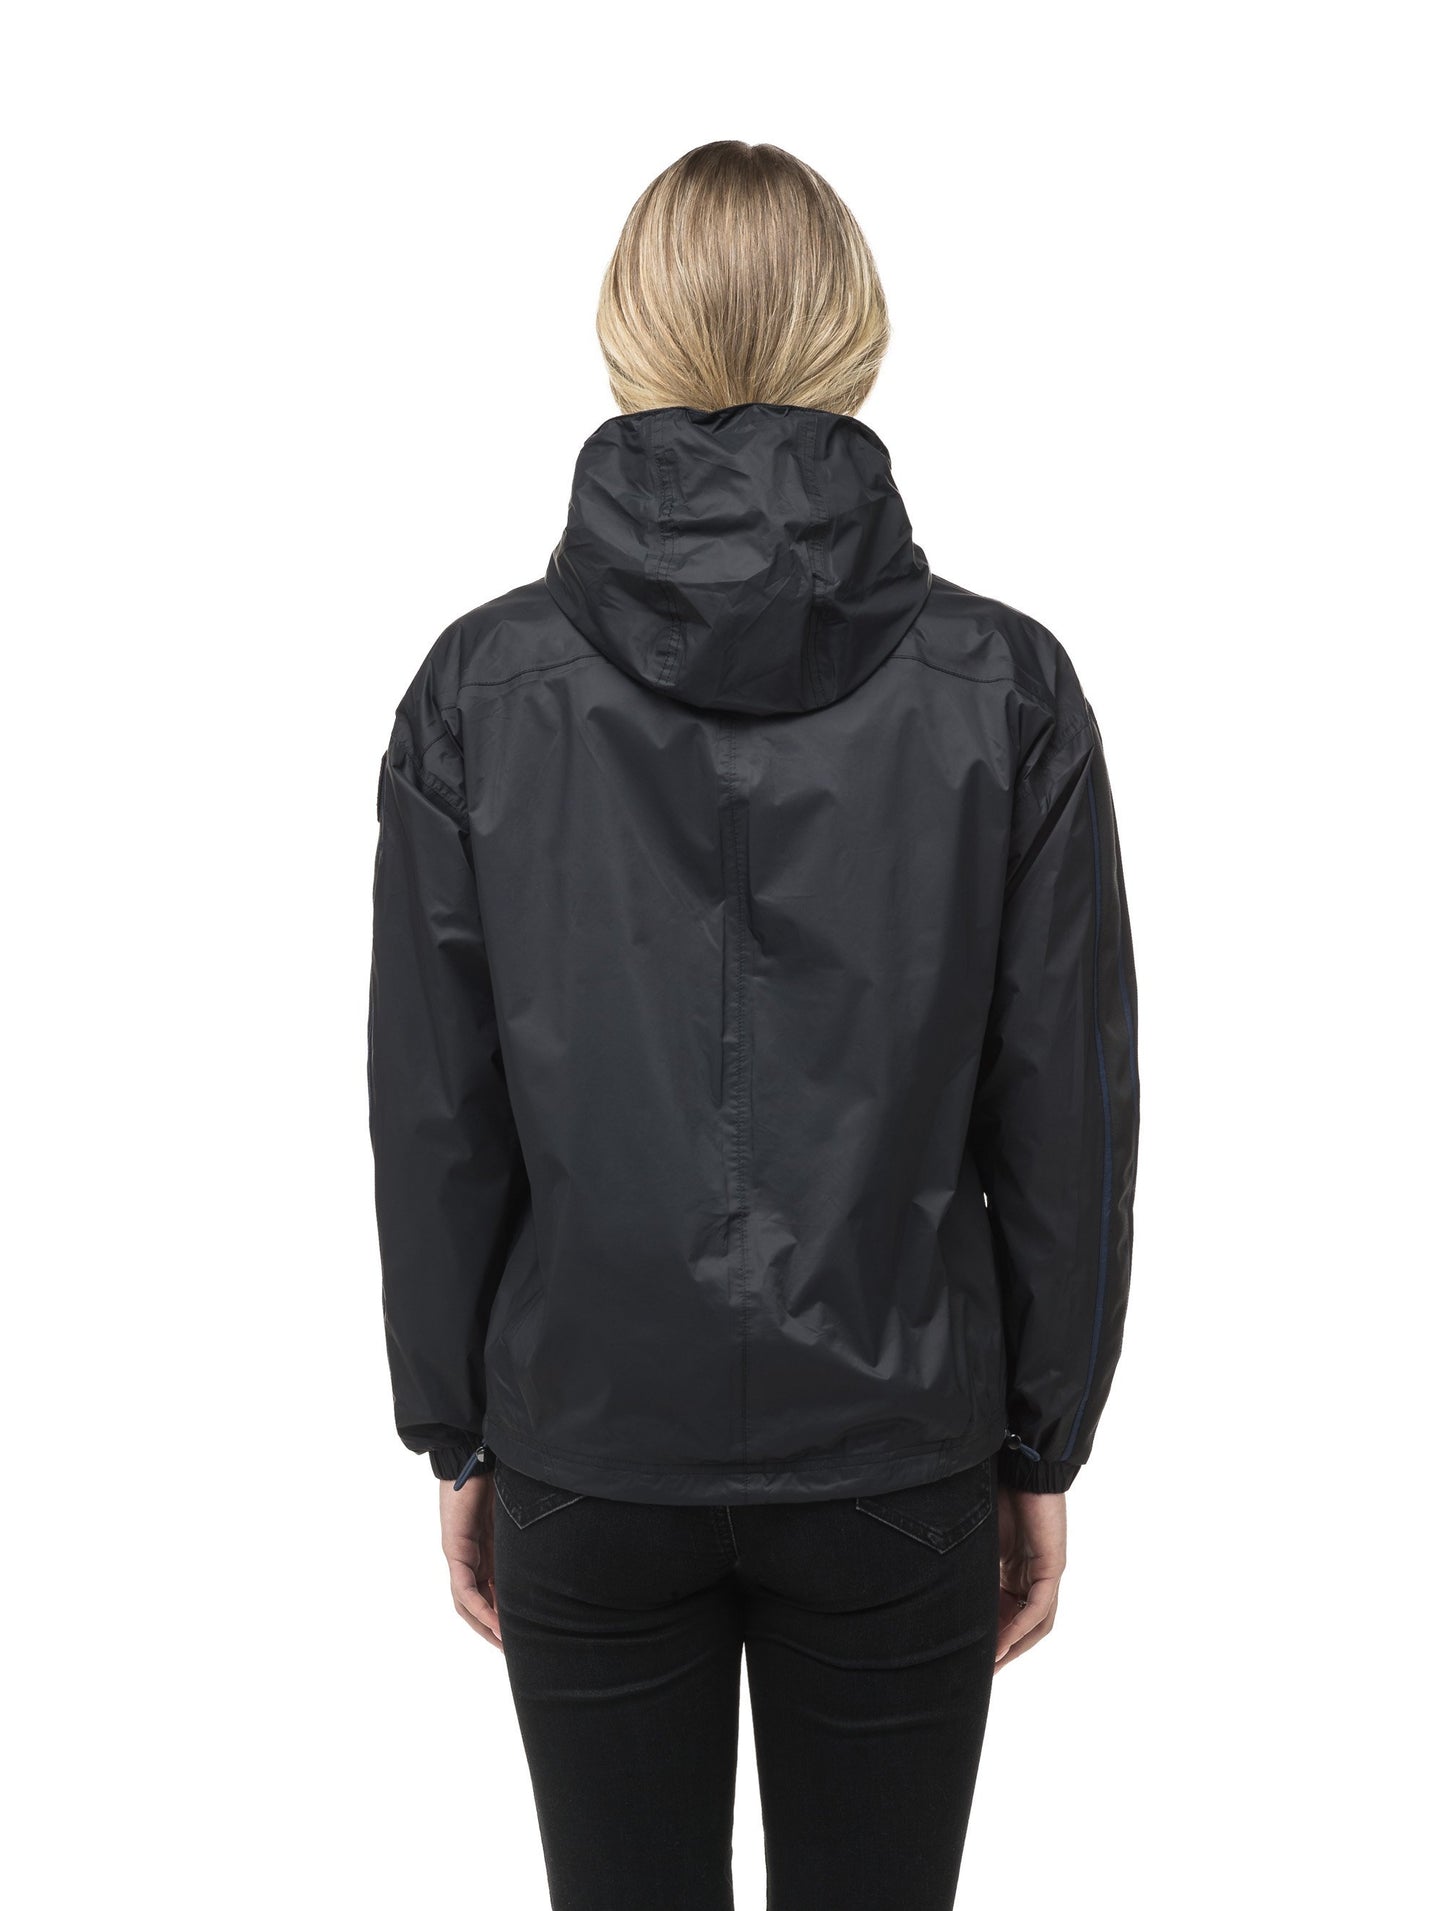 Women's waist length windbreaker with hood in Black